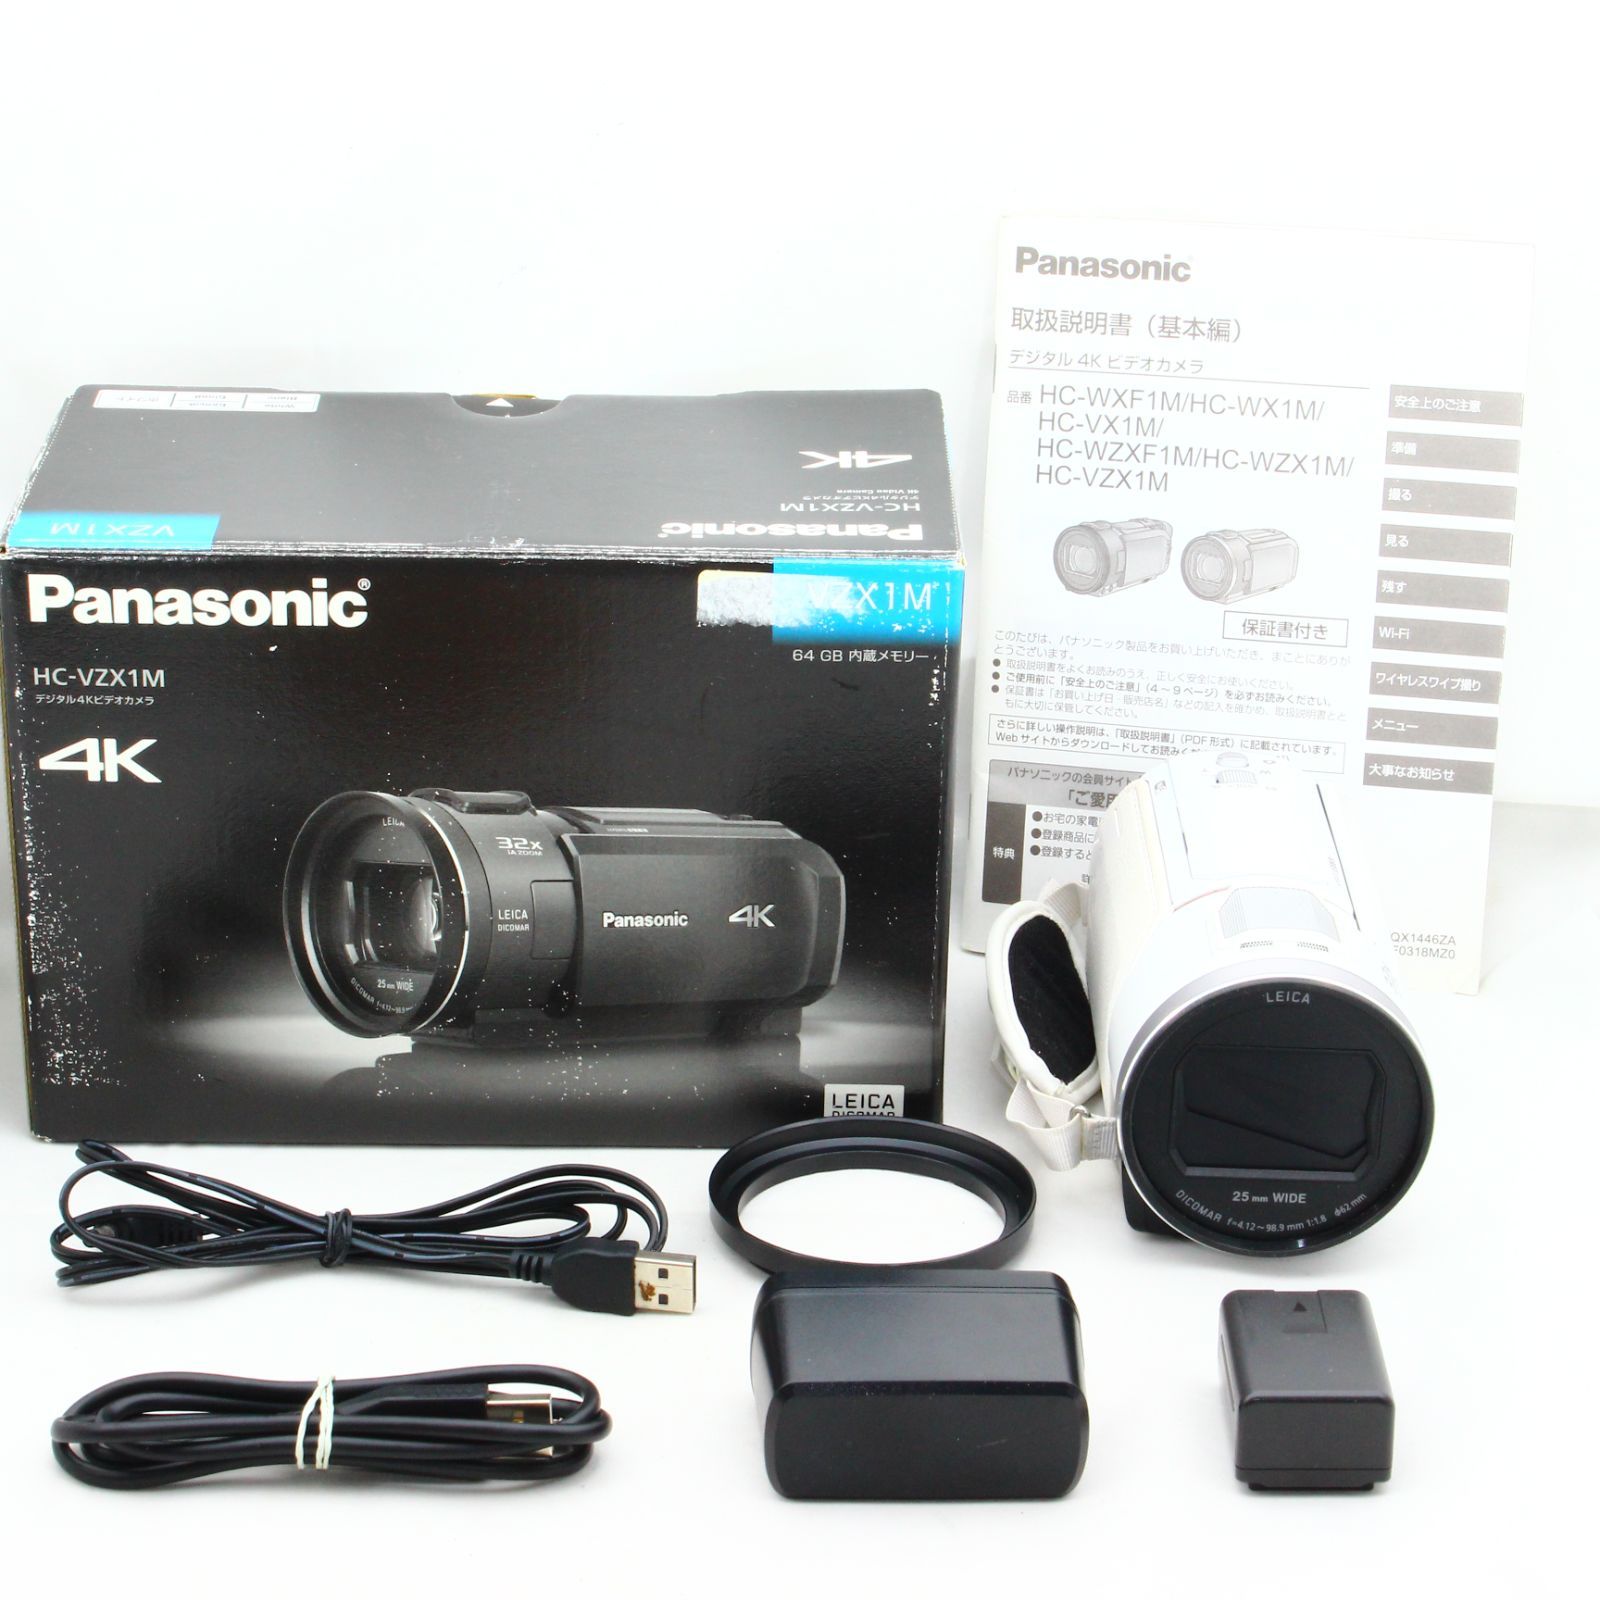 パナソニック 4K ビデオカメラ VZX1M 64GB あとから補正 ホワイト HC-VZX1M-W  :20221204121523-00645:enastore - 通販 - Yahoo!ショッピング - テレビ、オーディオ、カメラ